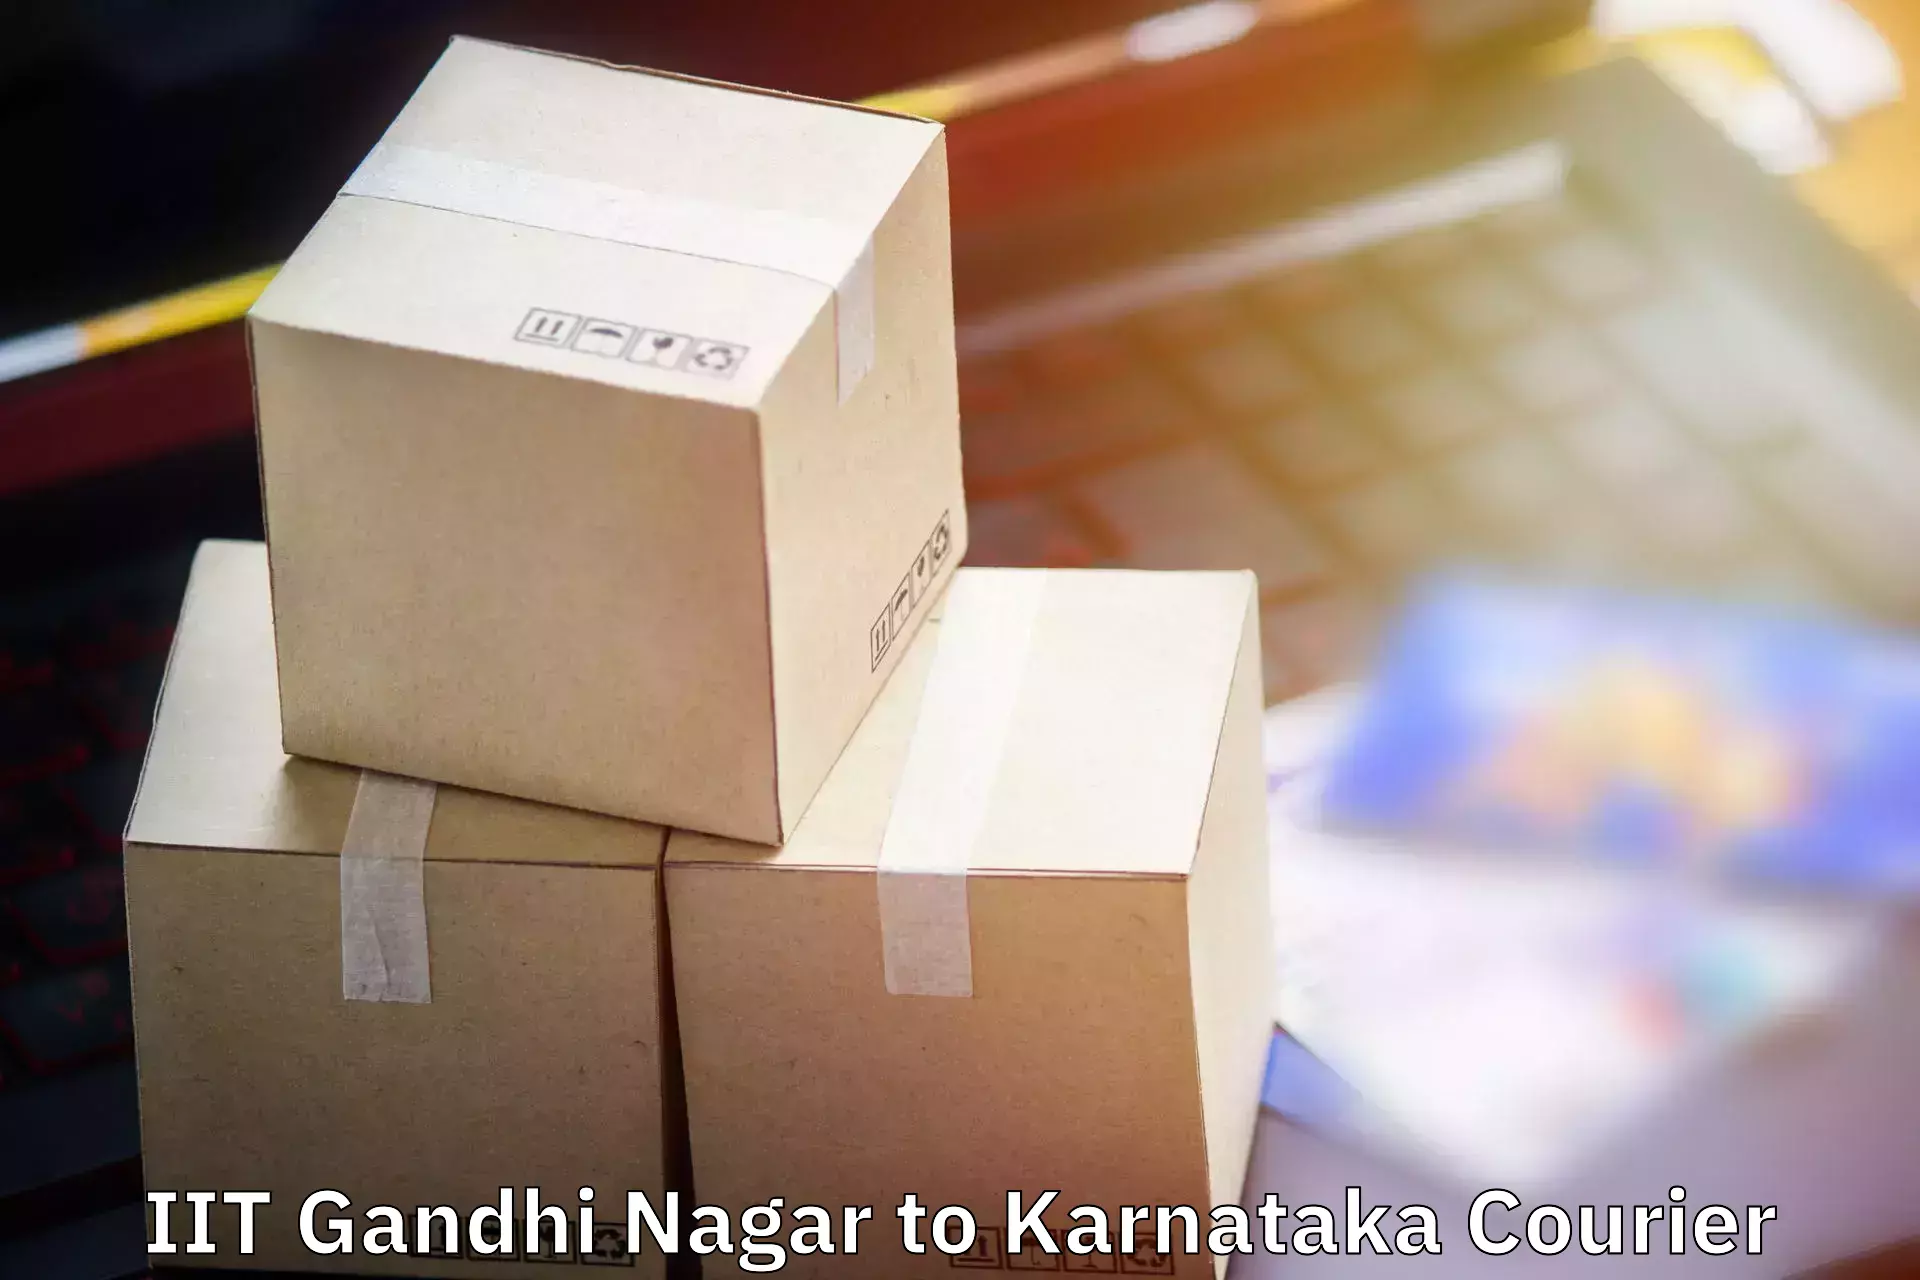 Single item baggage courier IIT Gandhi Nagar to Belgaum